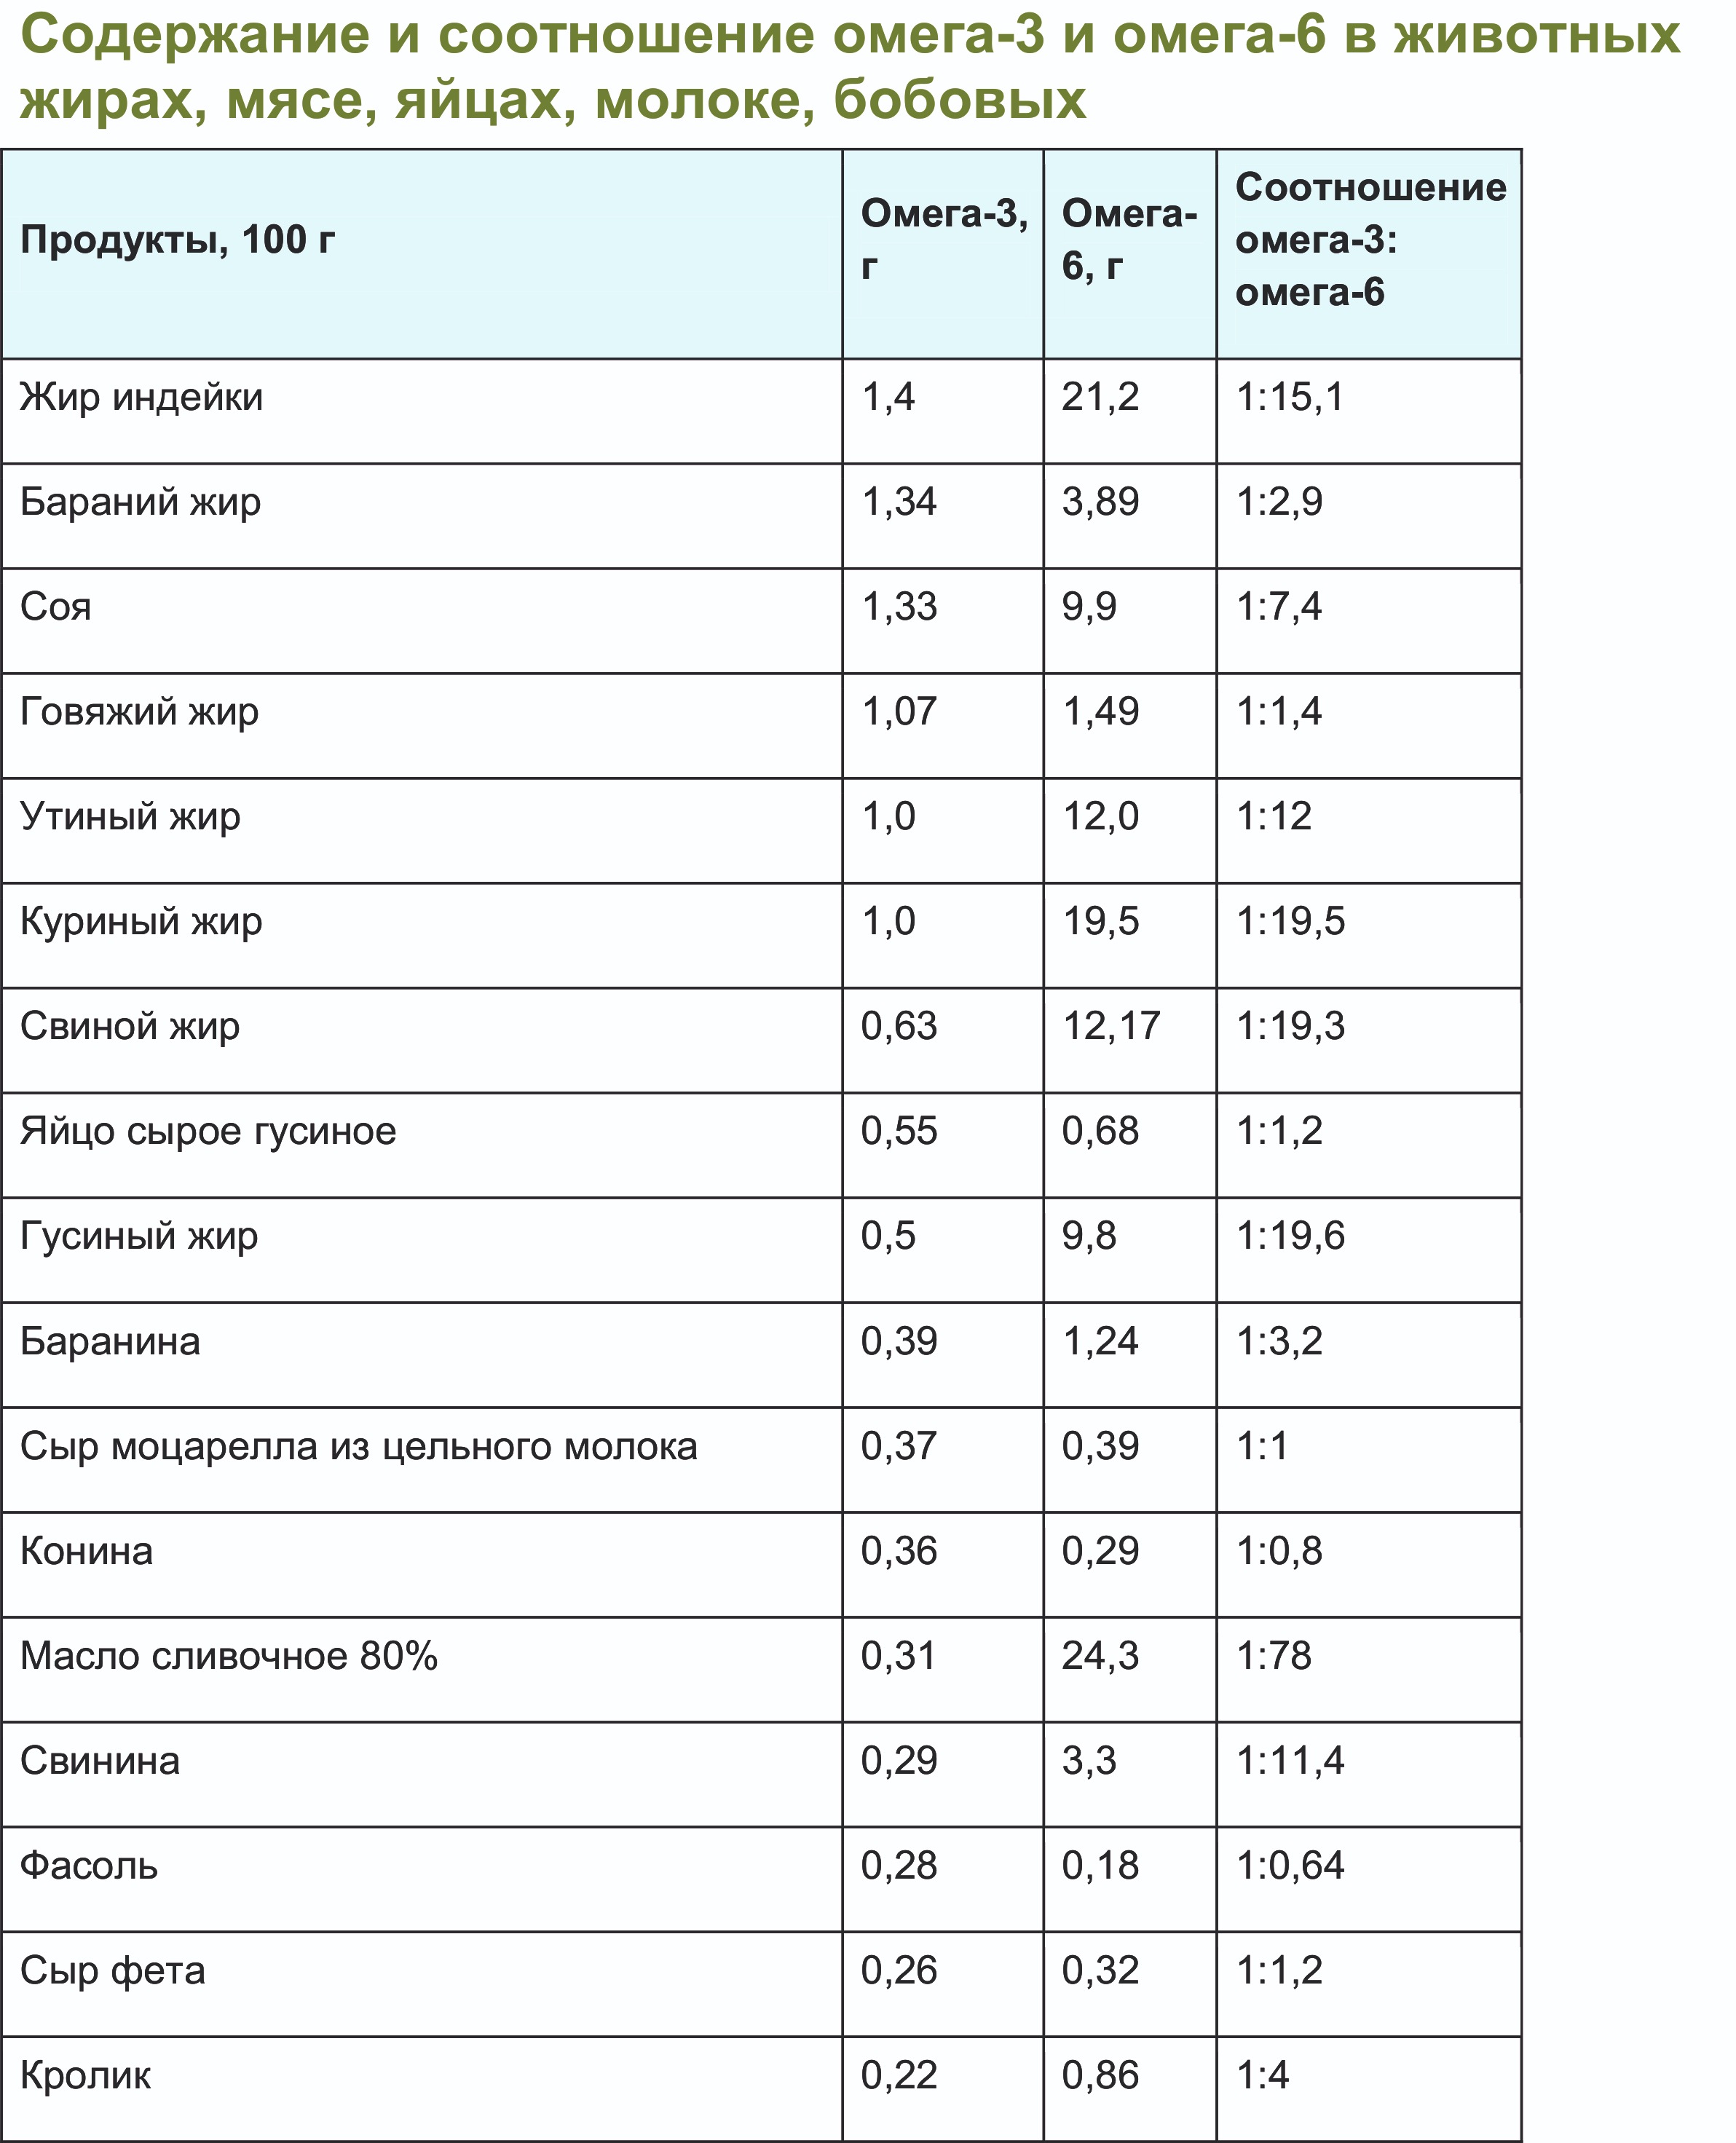 Содержание и соотношение омега-3 и омега-6 в продуктах